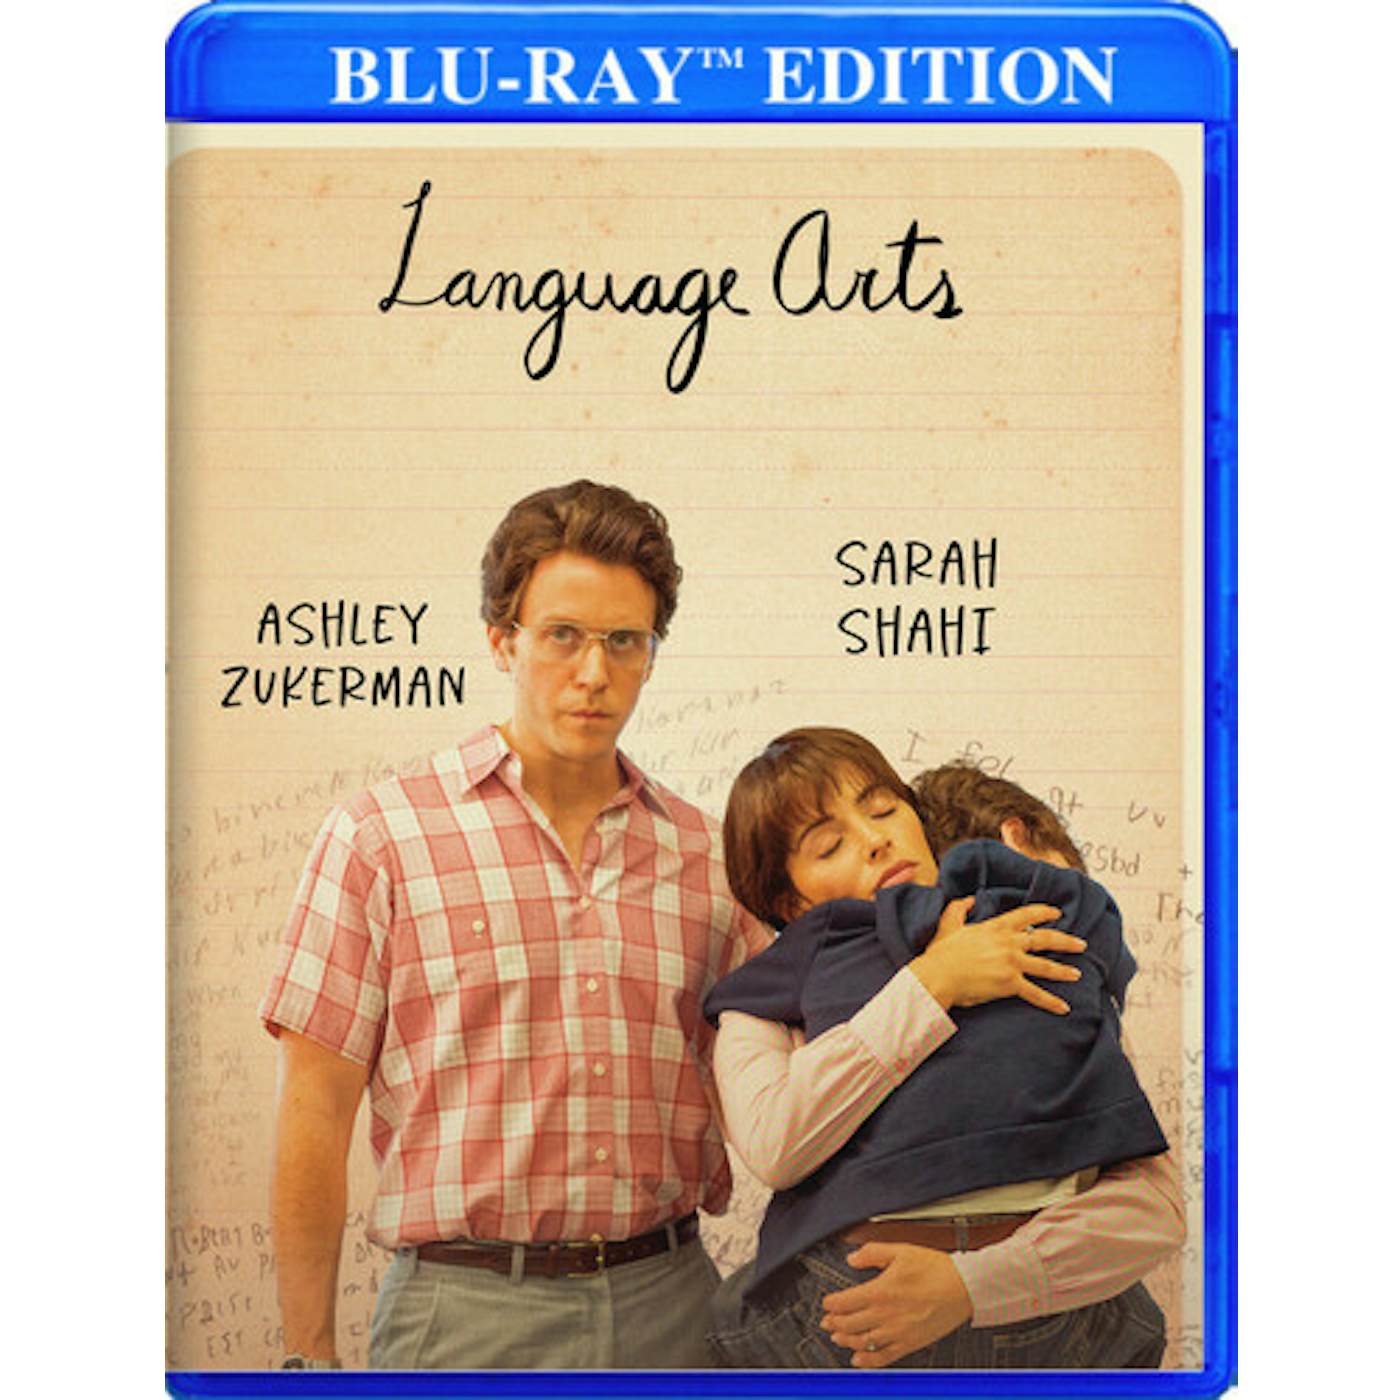 LANGUAGE ARTS Blu-ray